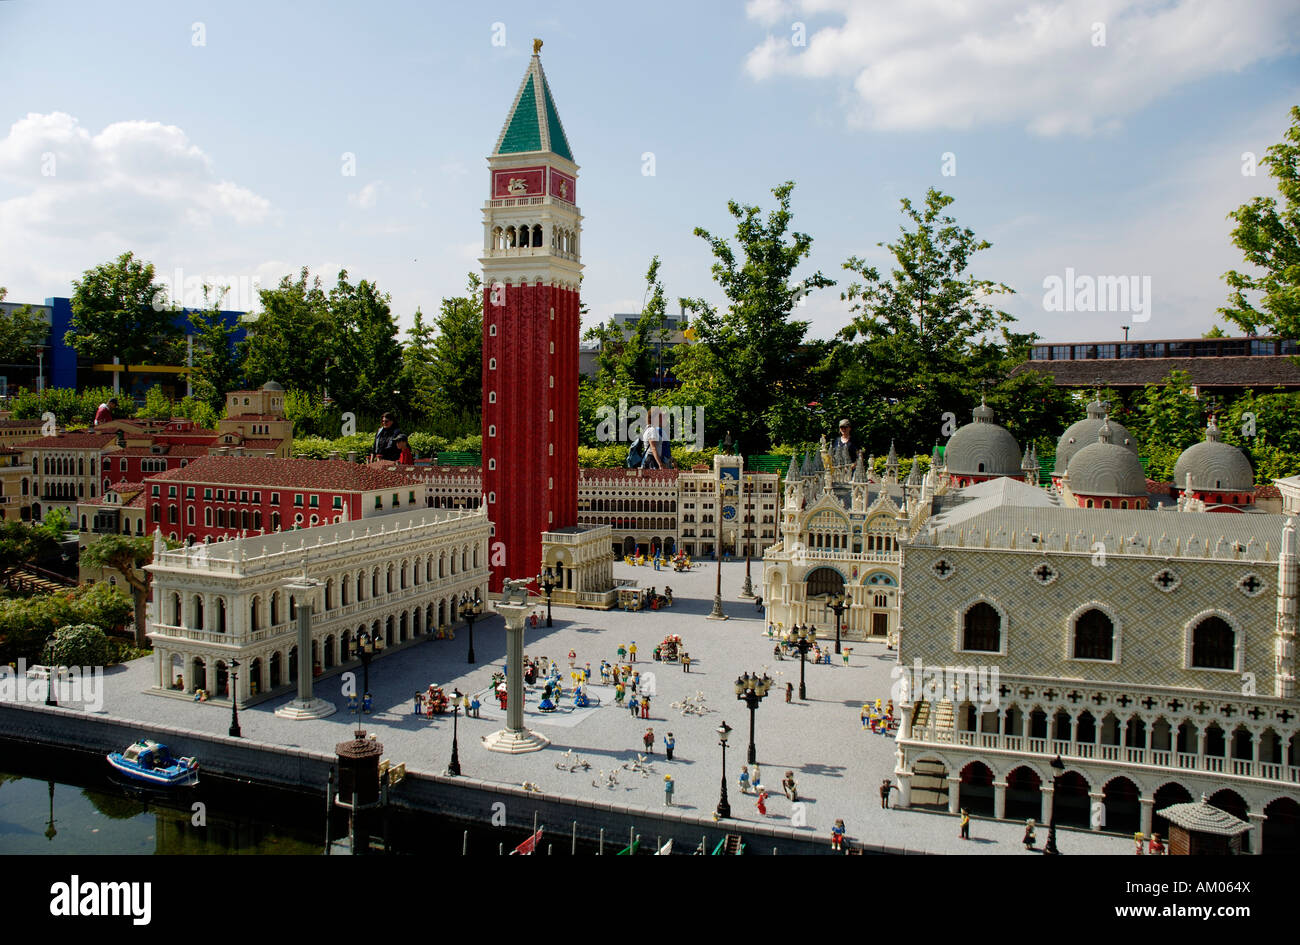 Venice, Marcus place made of Lego, theme park Legoland, Guenzburg, Germany Stock Photo